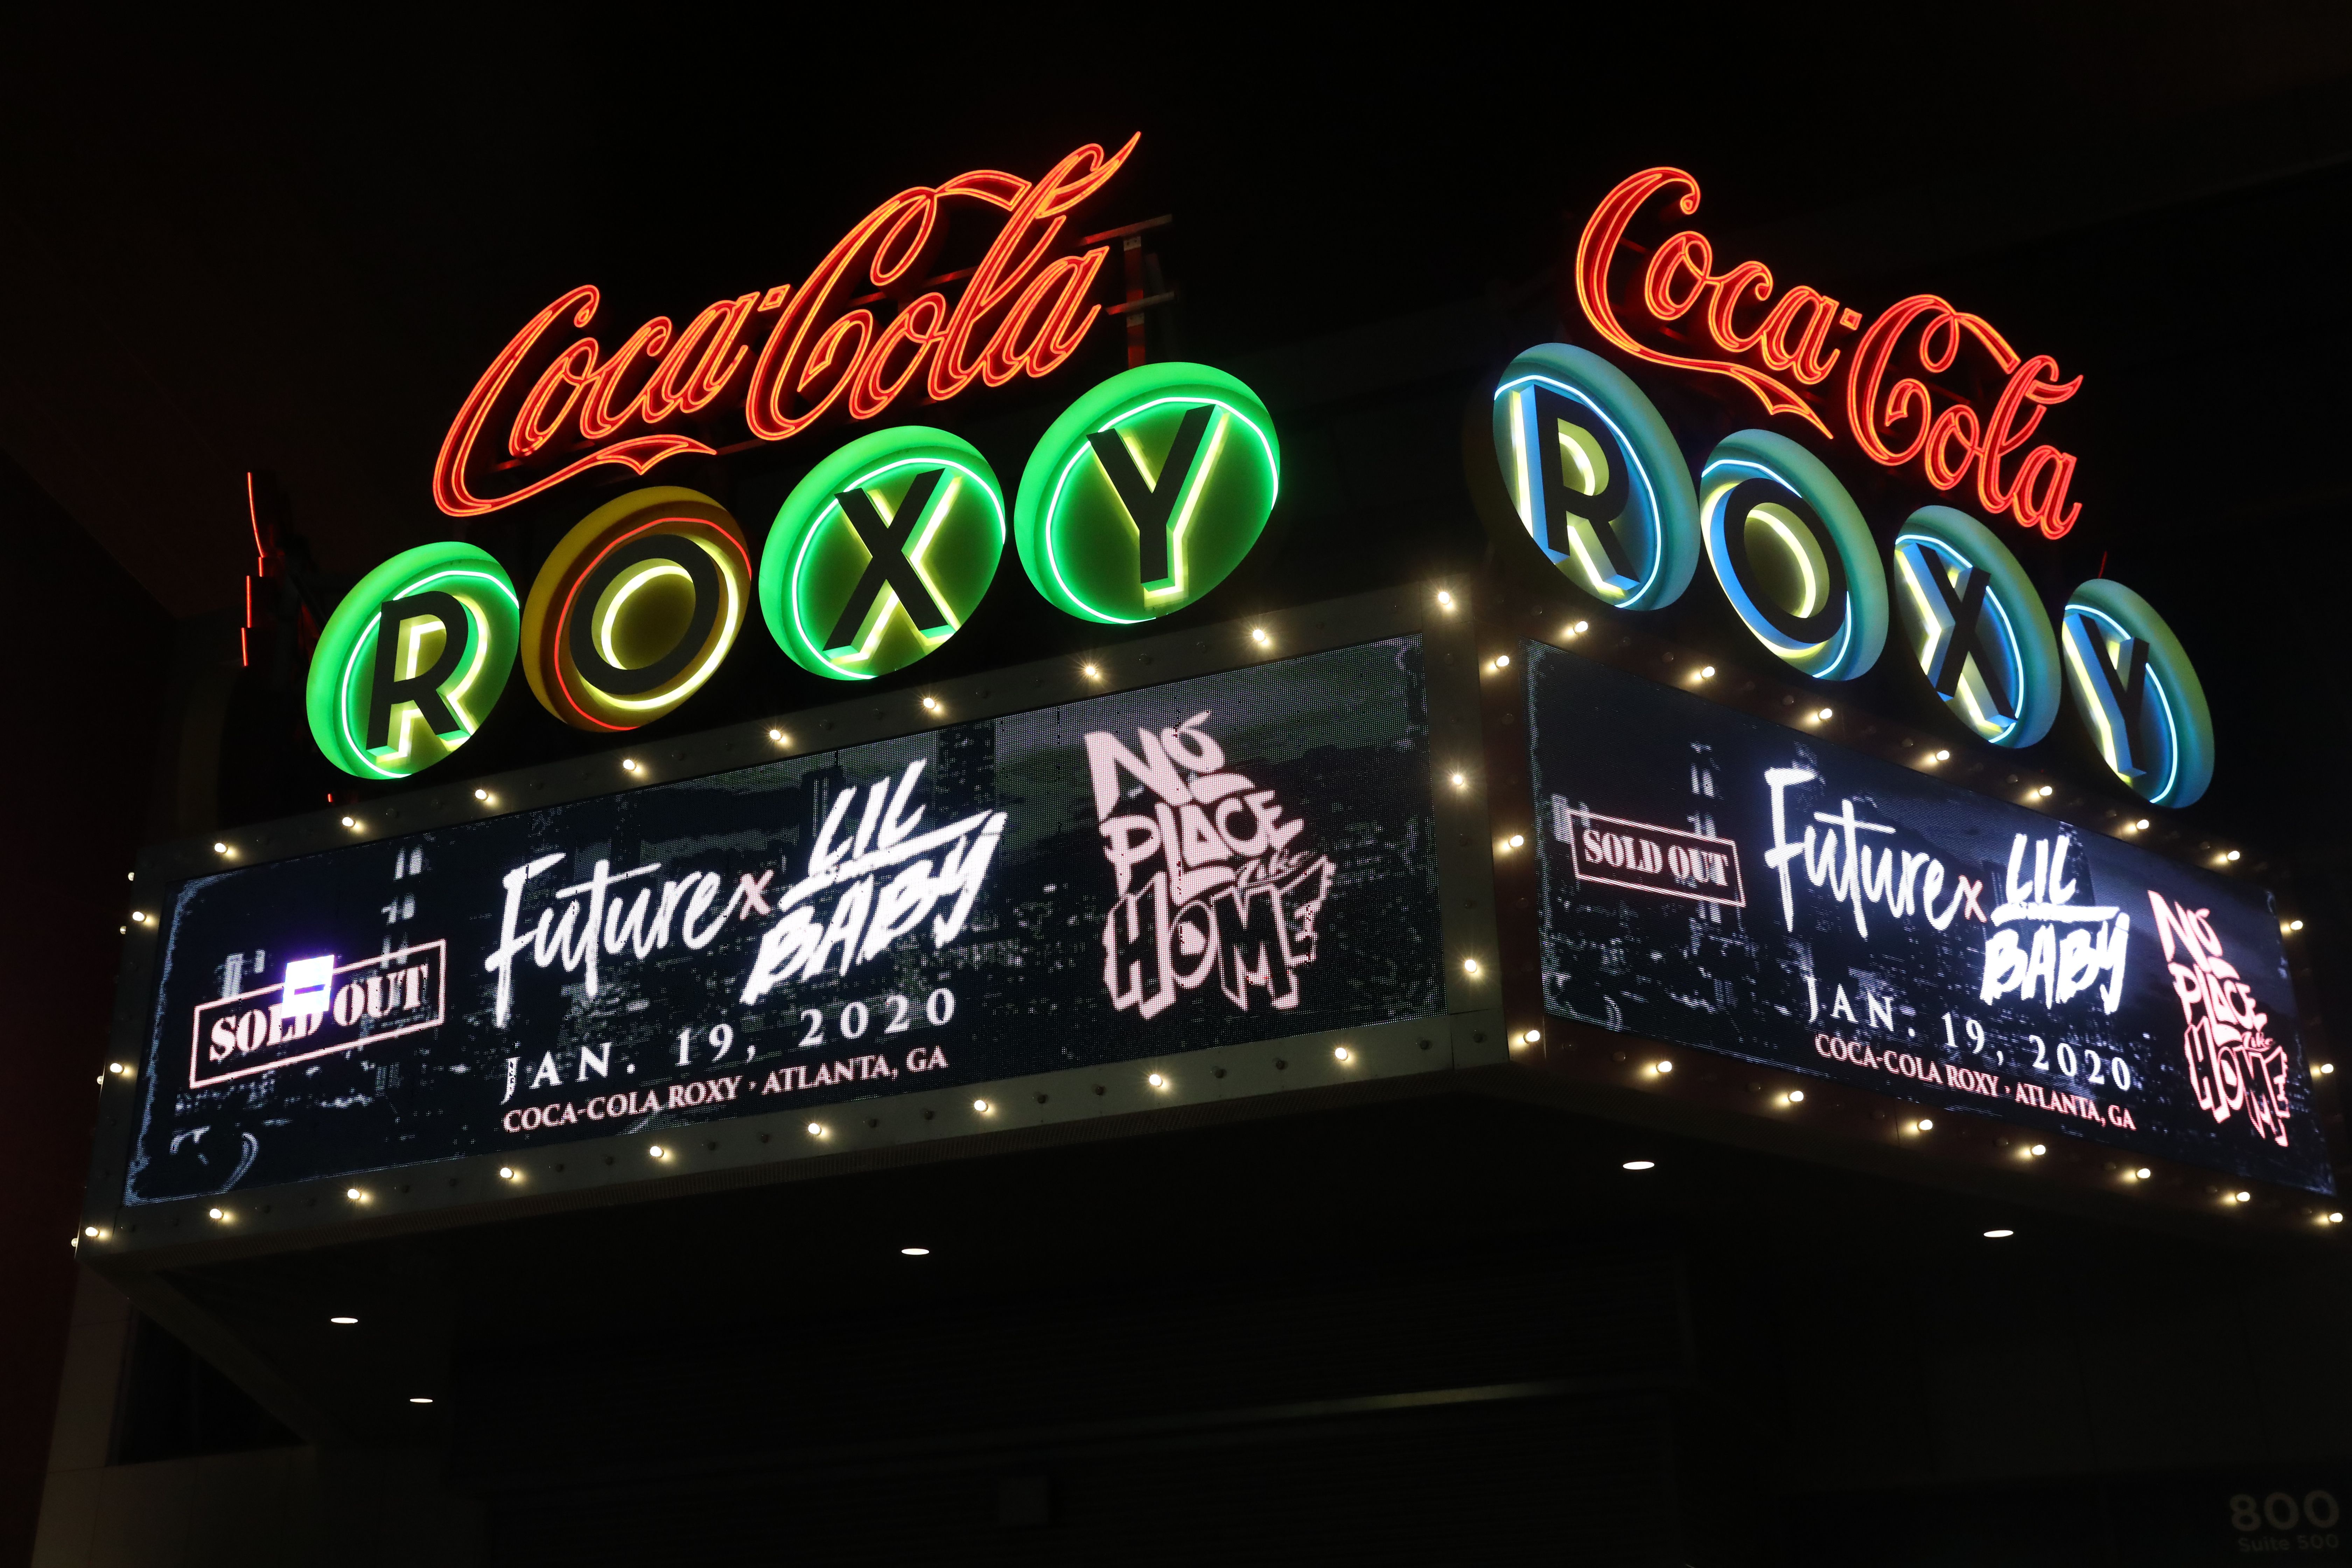 PHOTOS: Future and Lil Baby perform at Atlanta's Coca-Cola Roxy